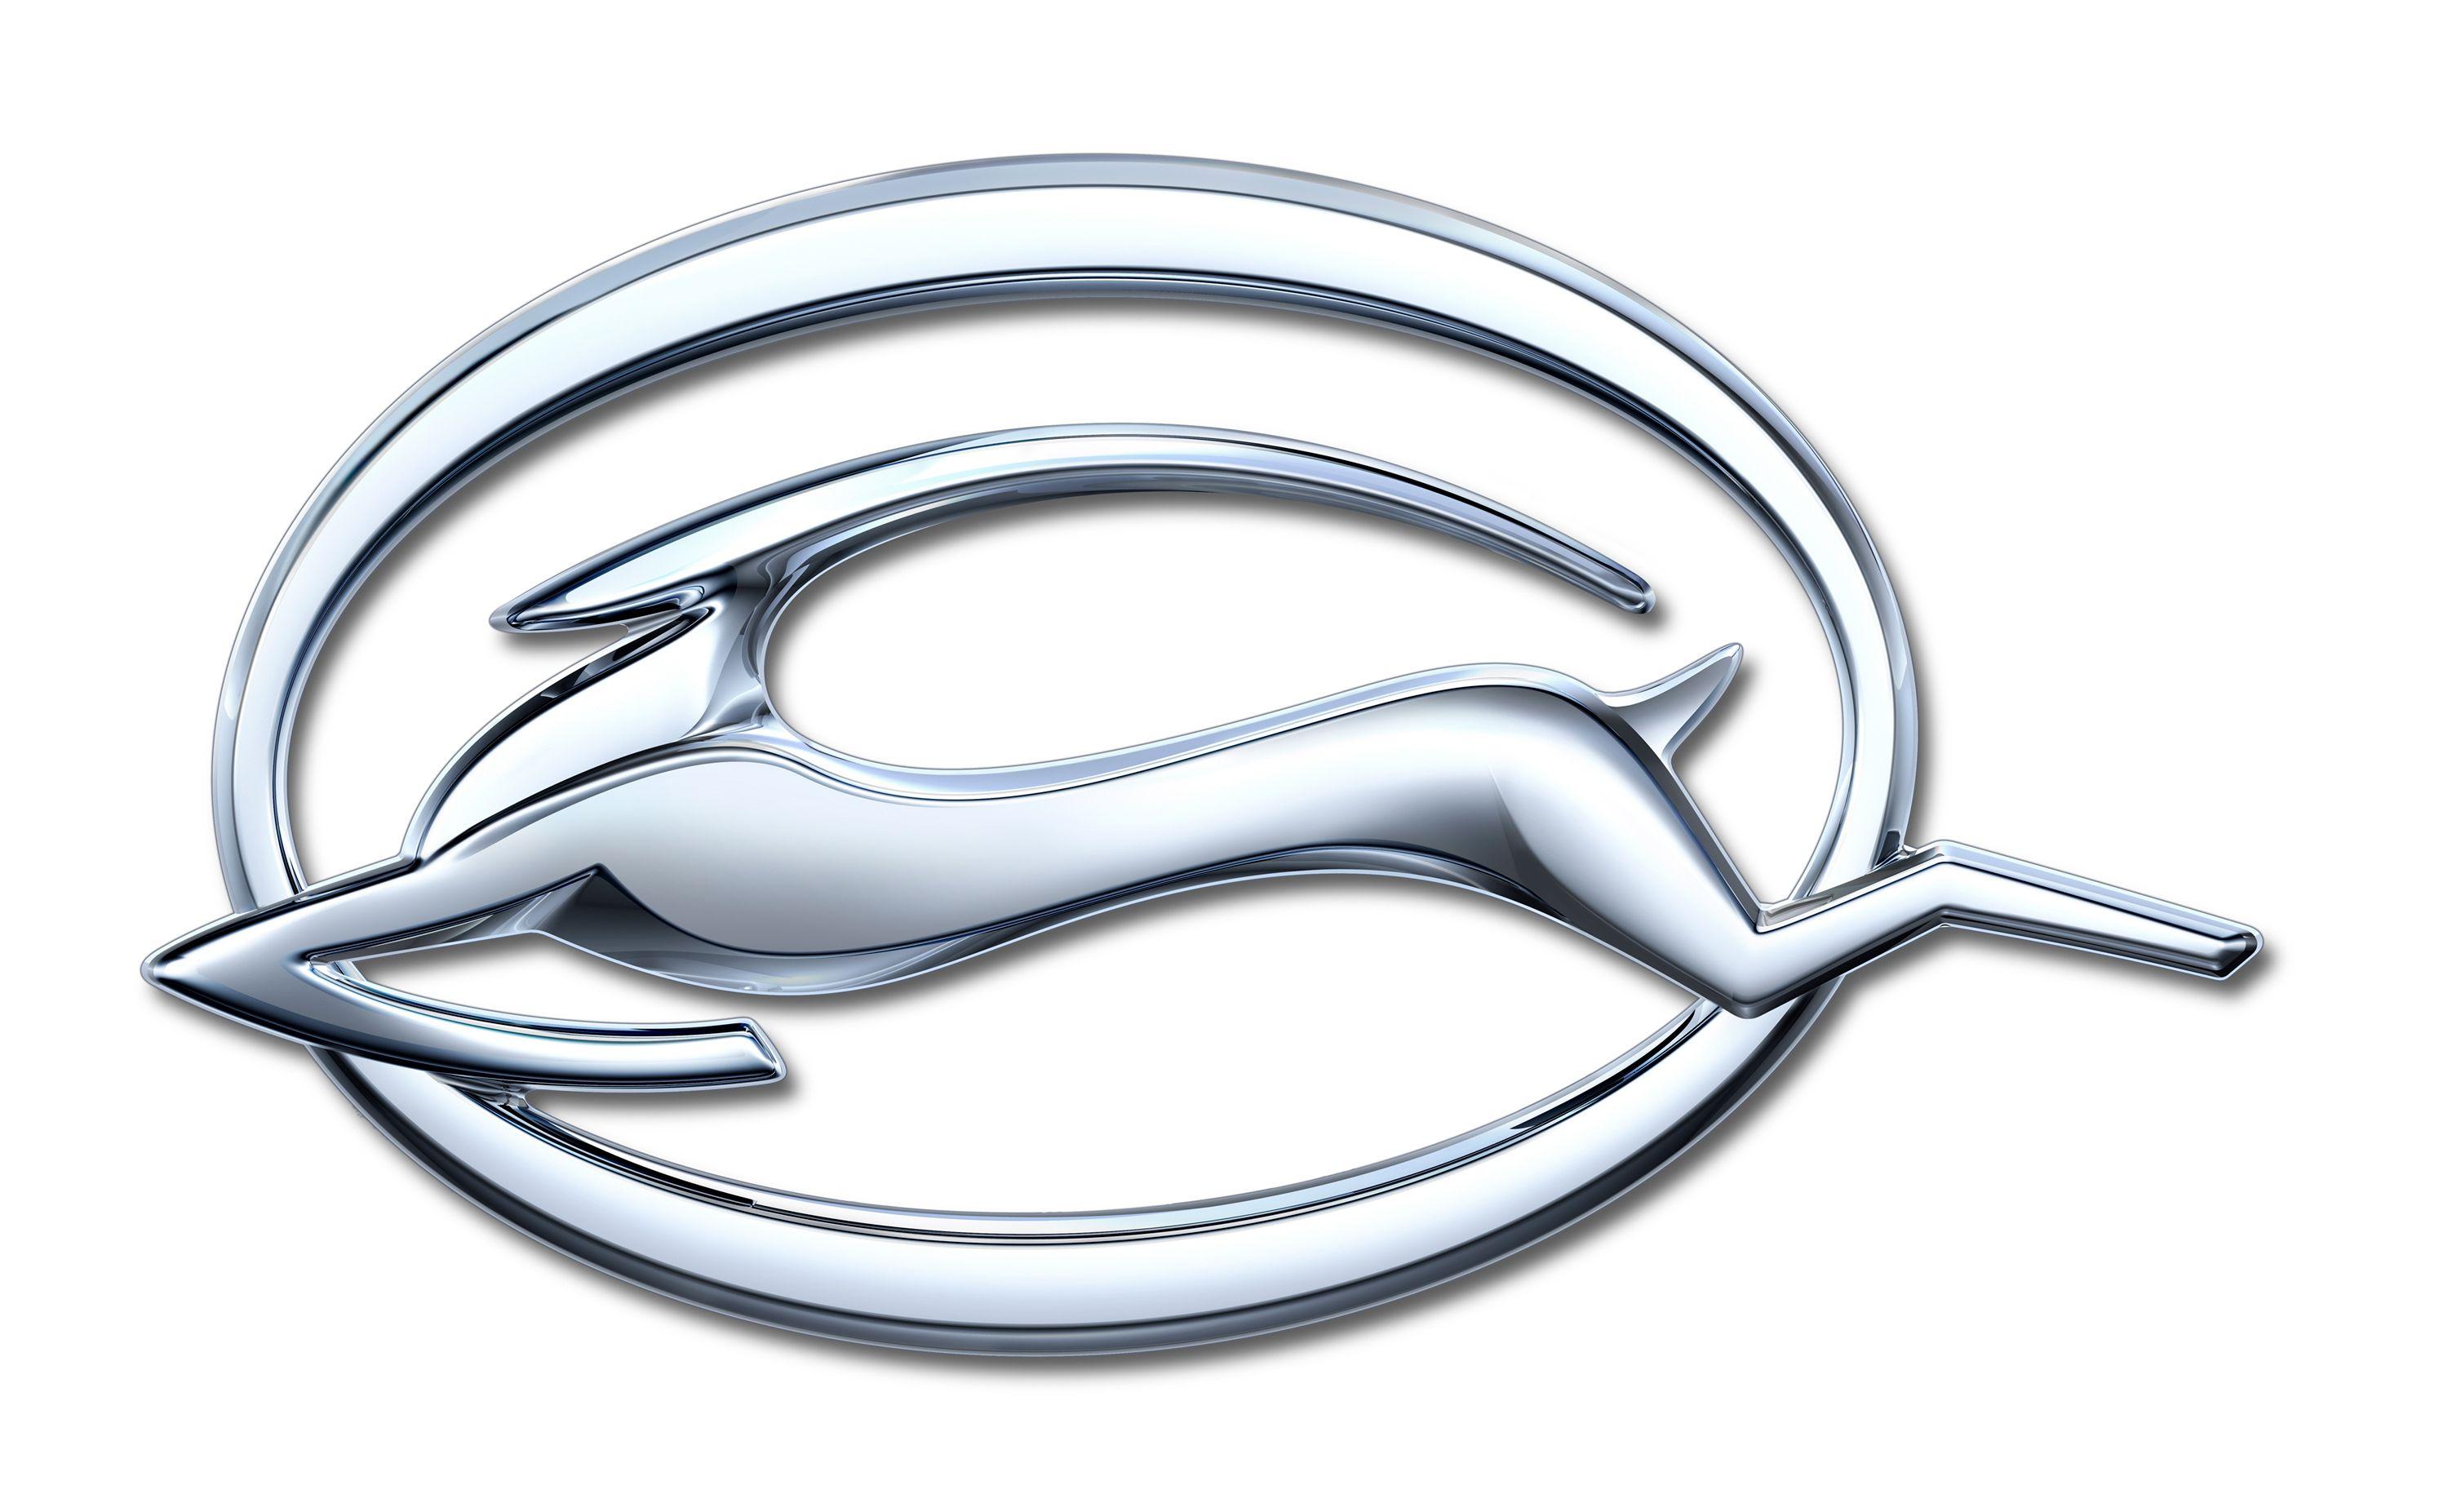 Impala Logo - Impala Emblem Design Leaps Forward with New Model